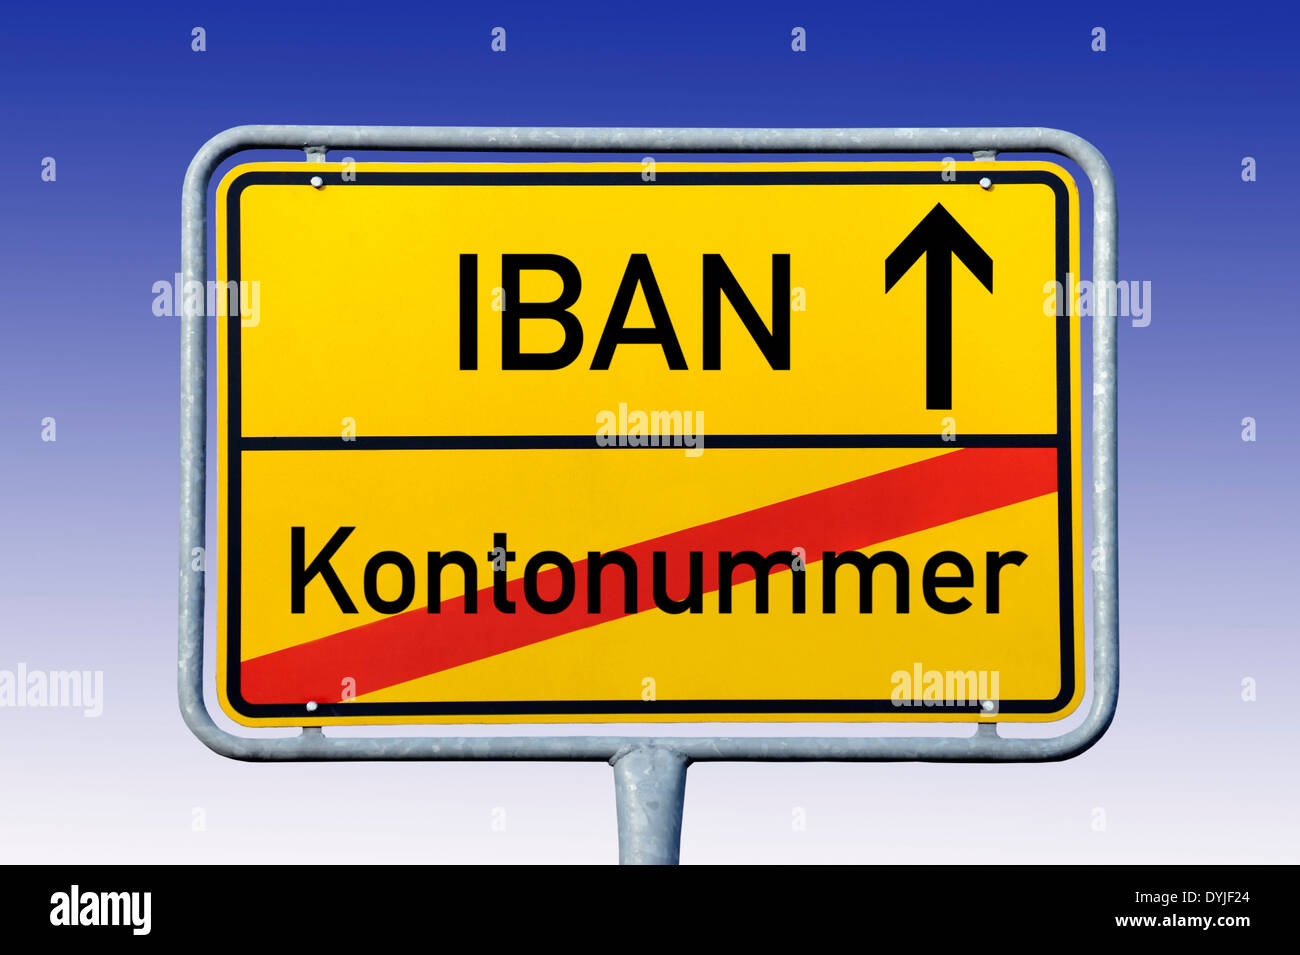 Ortsschild mit Aufschrift IBAN und Kontonummer Stock Photo